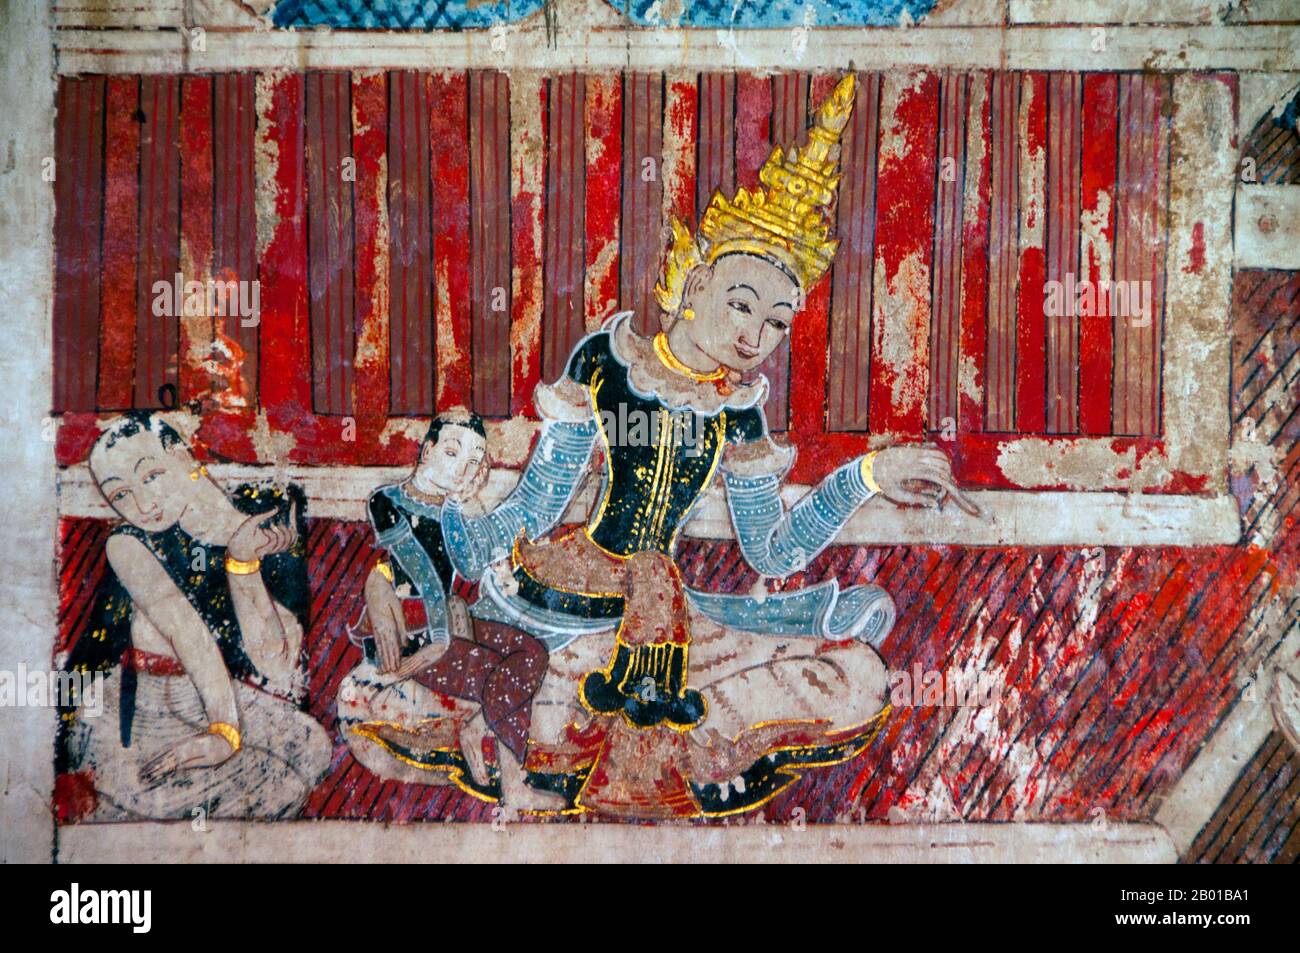 Thaïlande: Prince Siddhartha en vêtements de style birman, murale du nord, Wat Buak Khrok Luang, Chiang Mai. Siddhartha Gautama était un professeur spirituel de l'Inde ancienne qui a fondé le bouddhisme. Le moment de sa naissance et de sa mort est incertain : la plupart des historiens du début du 20th siècle ont daté sa vie comme c. 563 BCE à 483 BCE, mais une opinion plus récente date son décès entre 486 et 483 BCE ou, selon certains, entre 411 et 400 BCE. Wat Buak Khrok Luang, situé à Ban Buak Khrok Luang Moo 1, Chiang Mai – Sankamphaeng Road, est un petit temple bouddhiste typiquement thaïlandais du nord. Banque D'Images